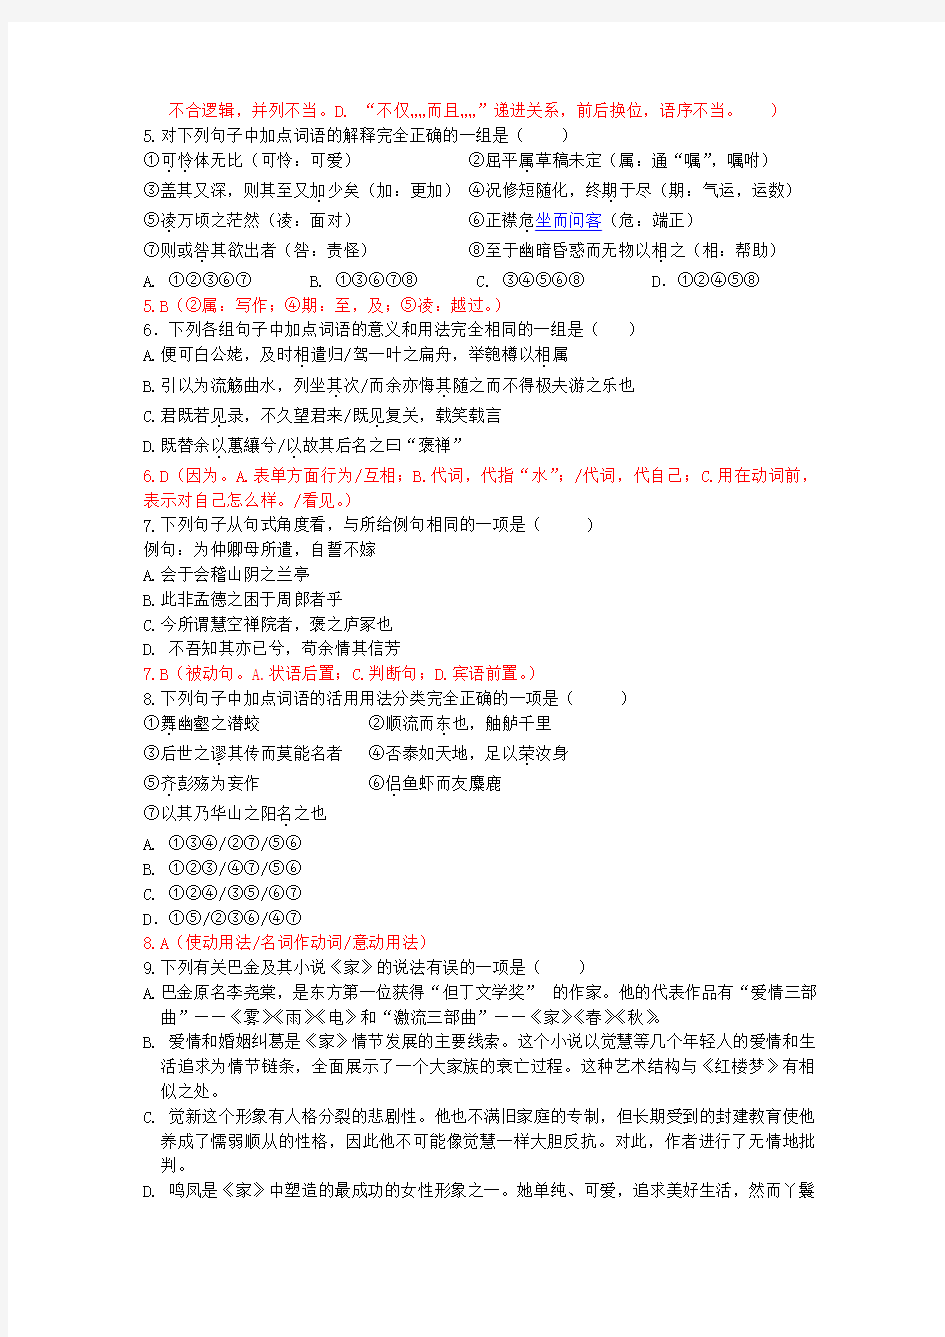 黄冈中学2013年秋季高一年级期末考试(教师版)语文试题